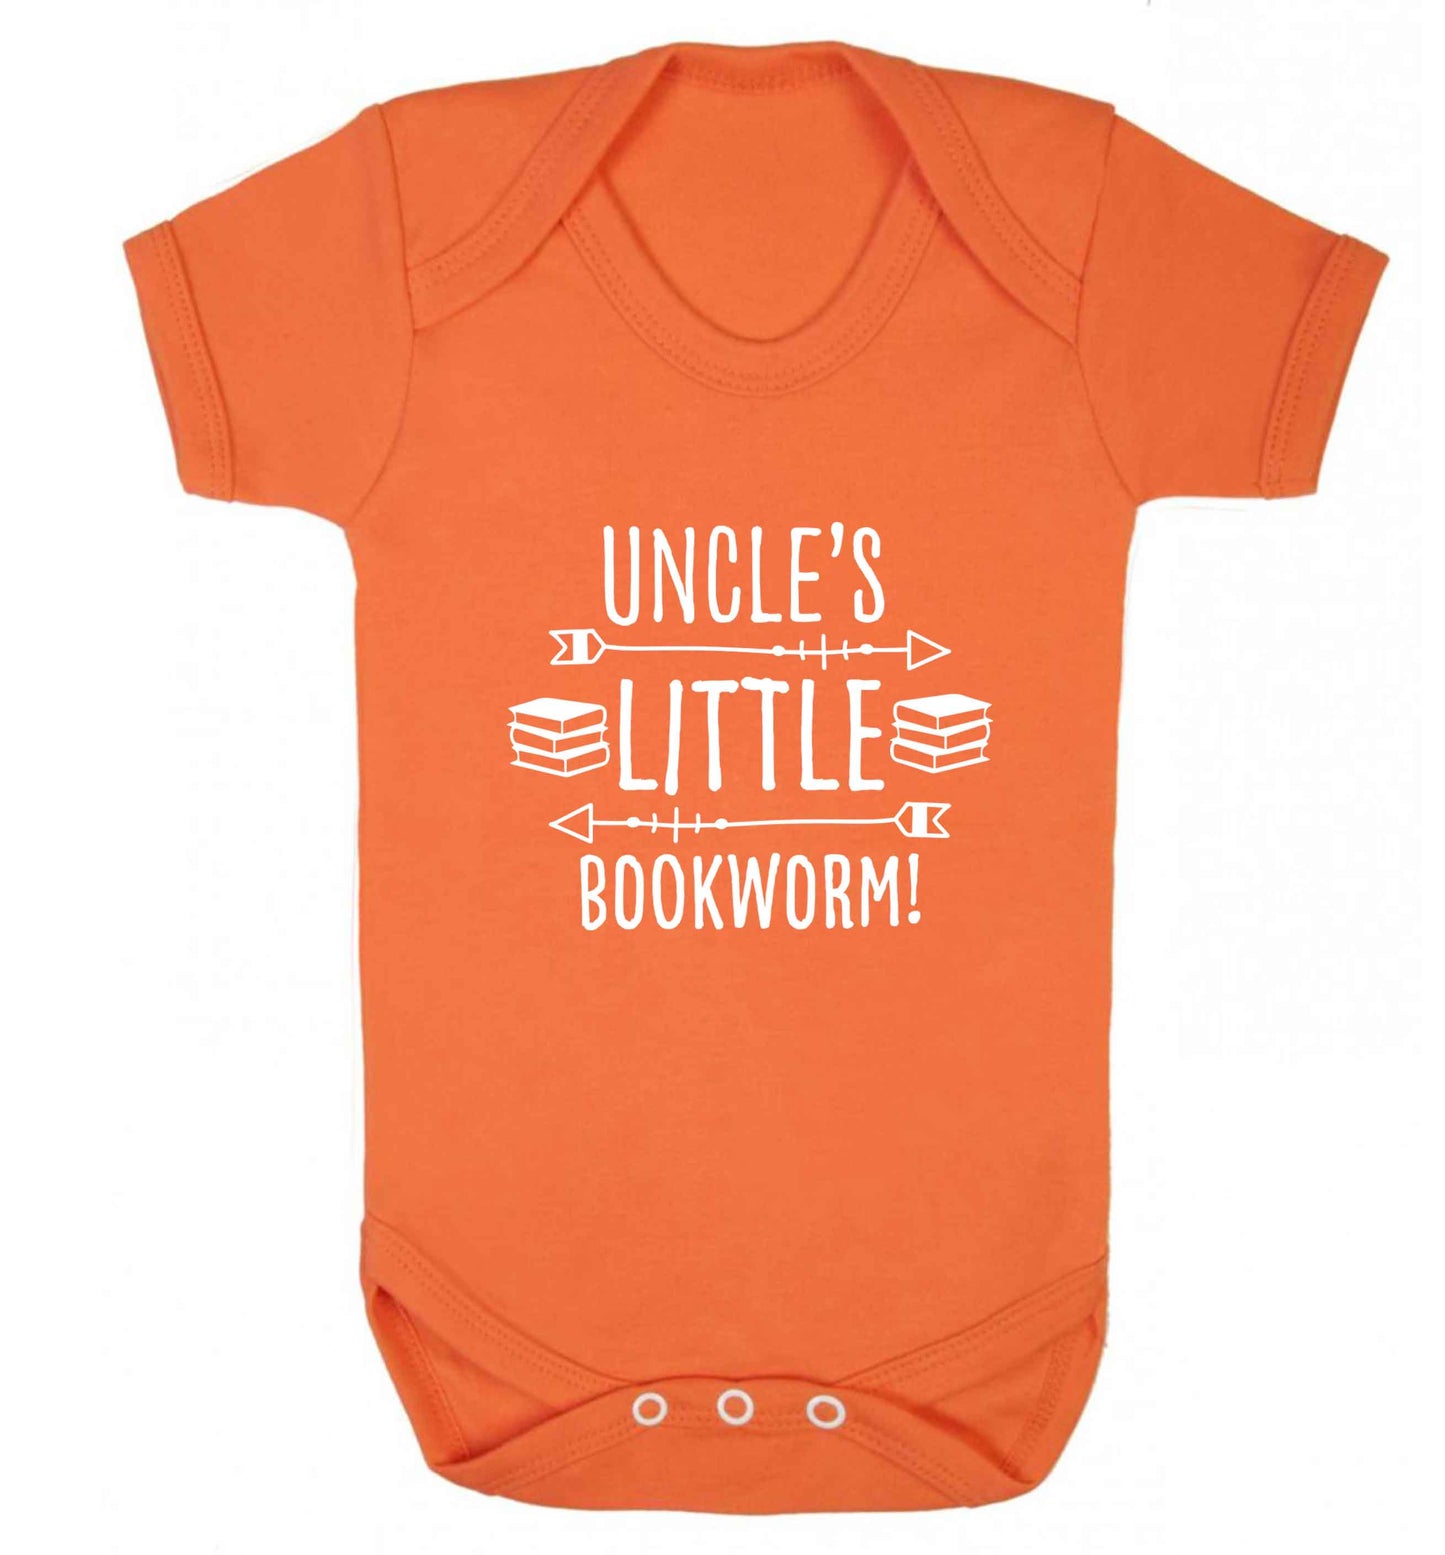 Uncle's little bookworm baby vest orange 18-24 months